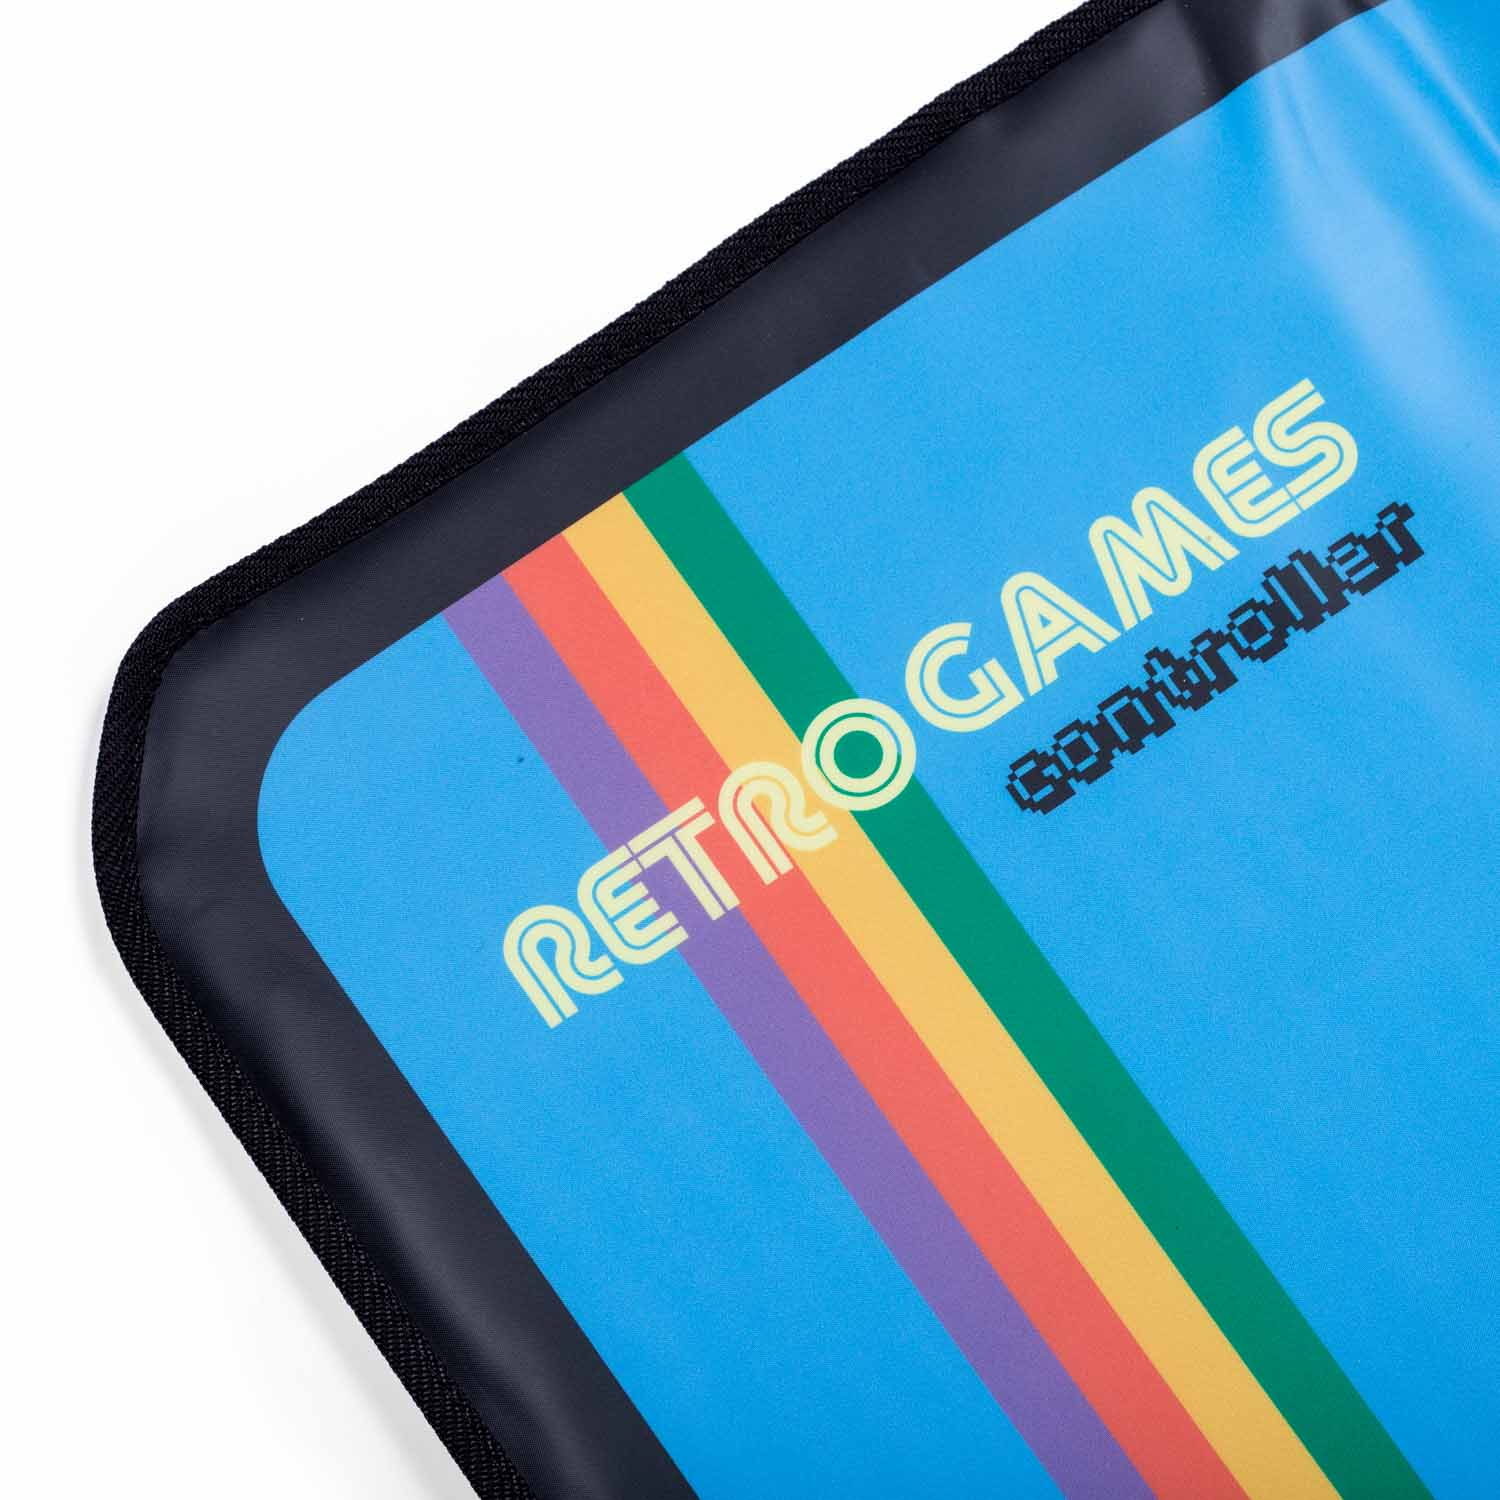 ORB Retro - Gaming 8-Bit Matte 200x Spielen inkl